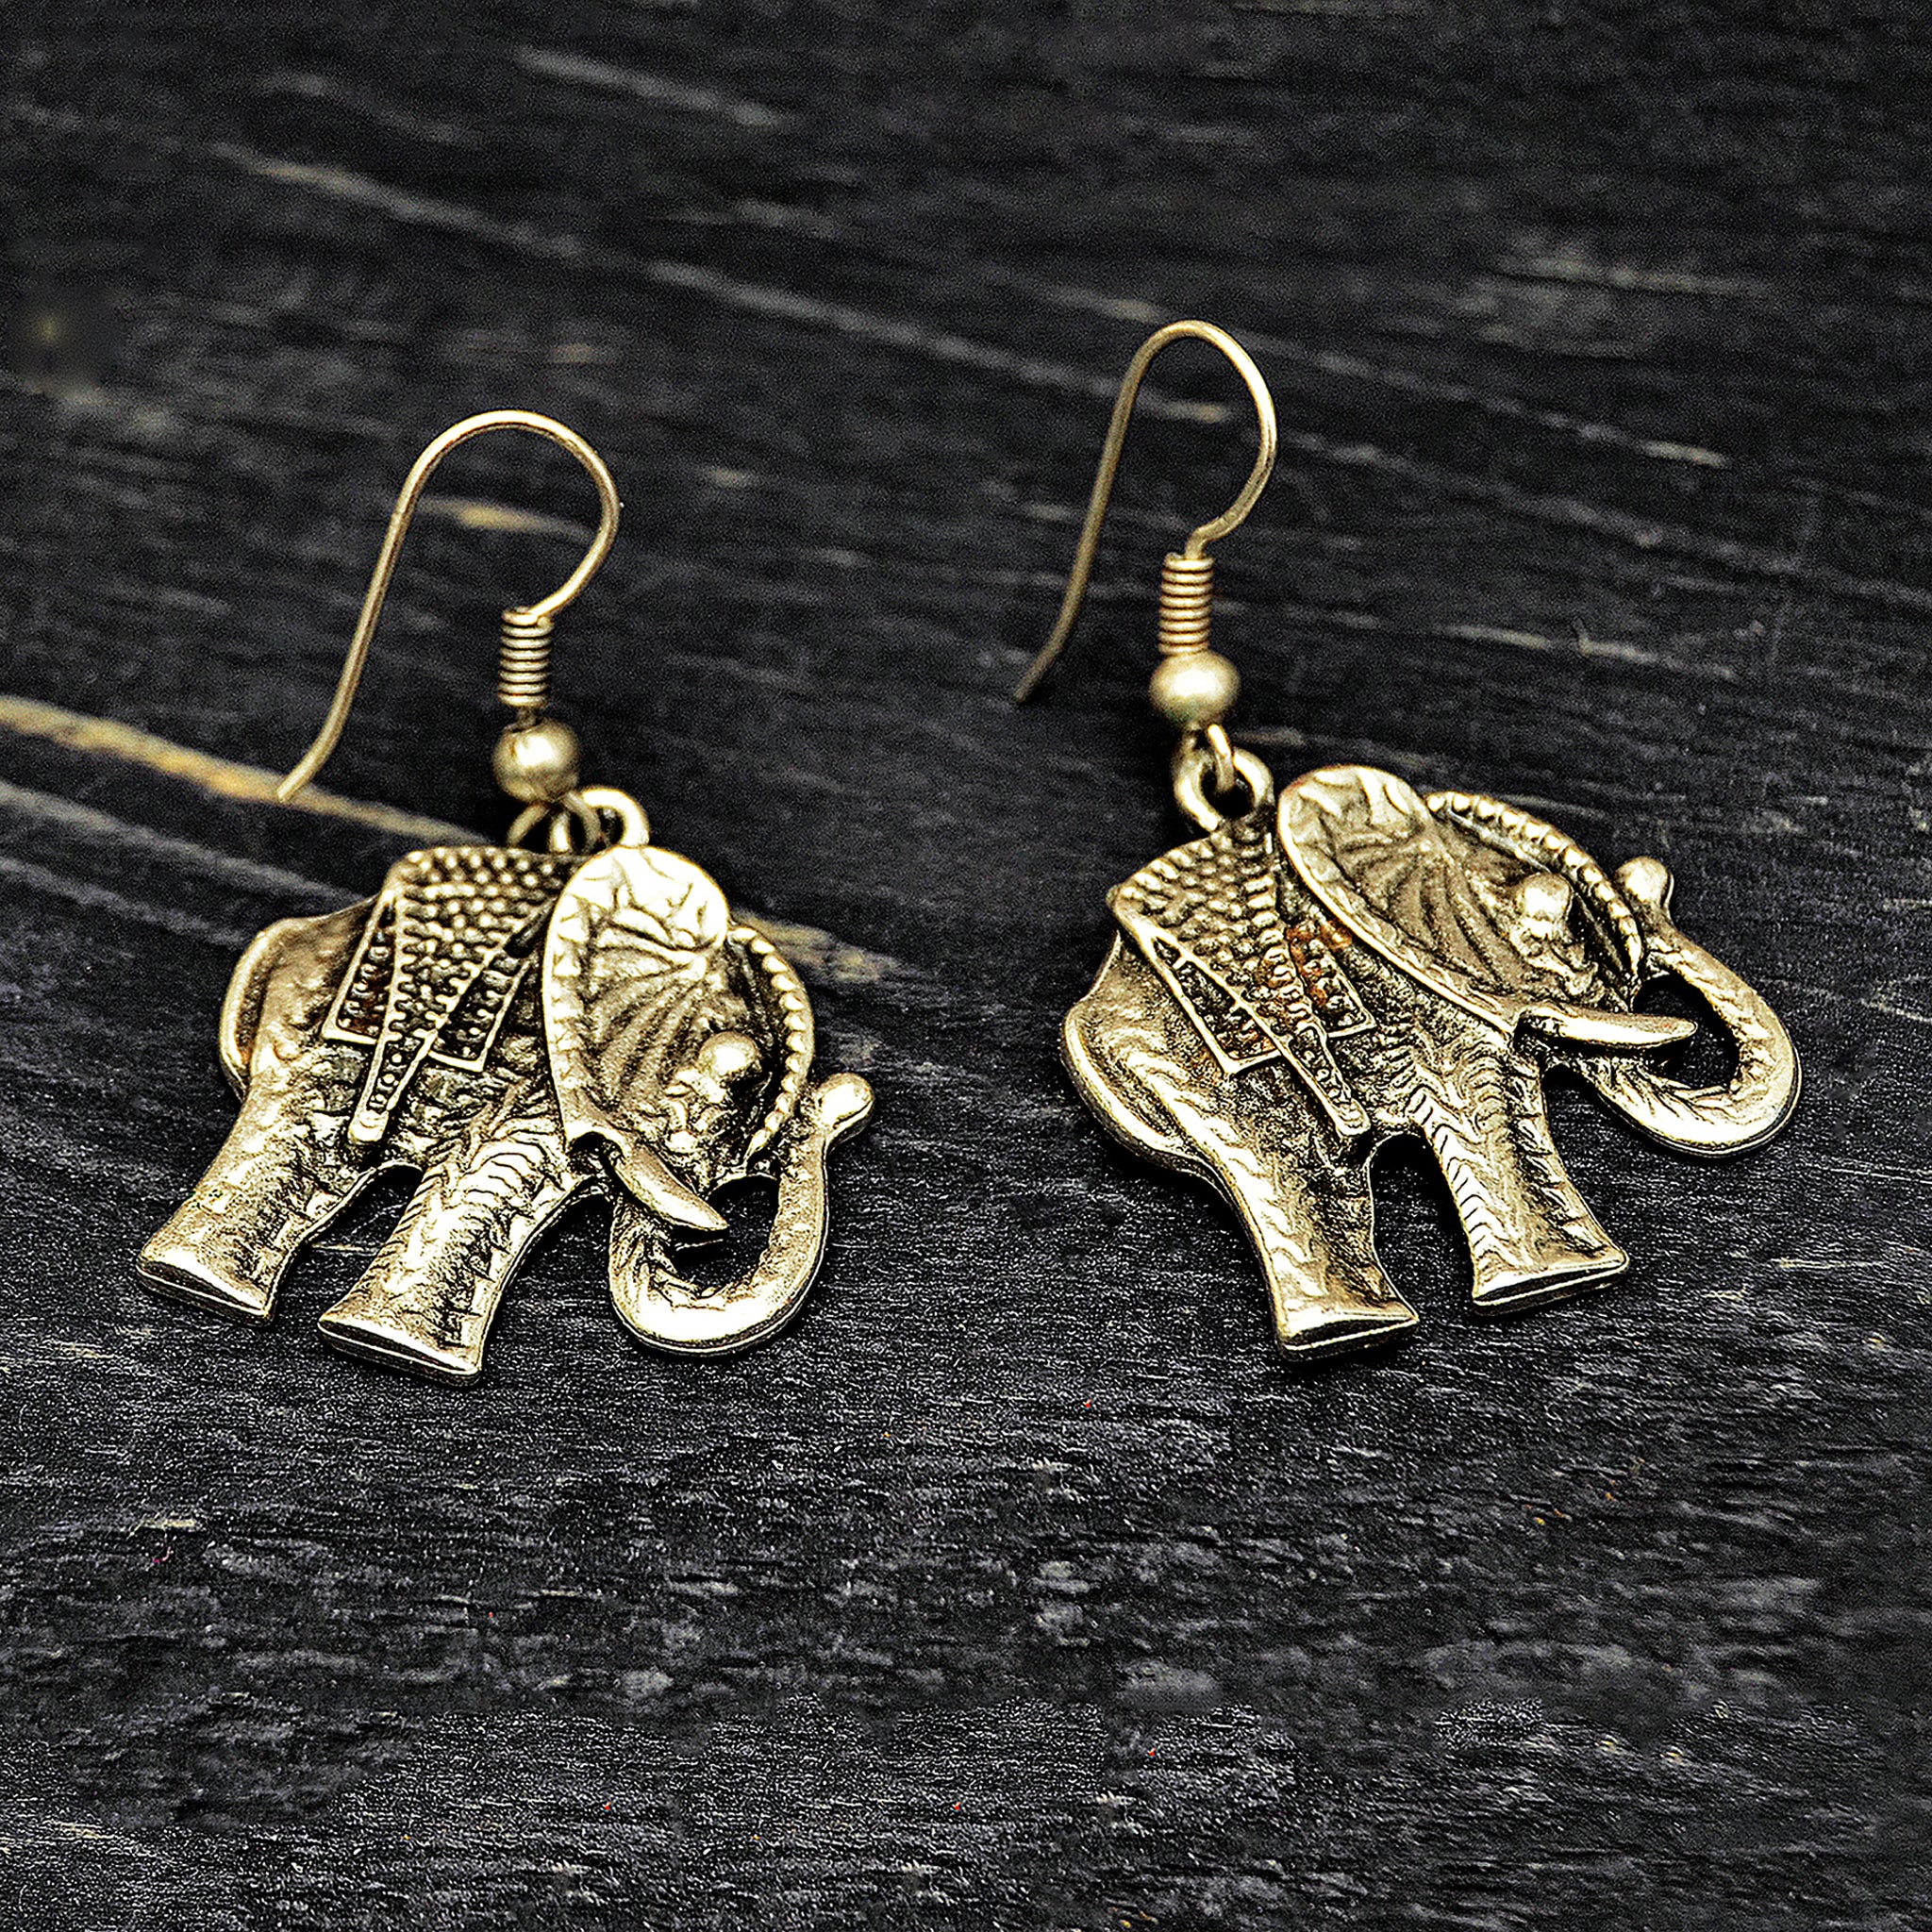 Asian elephant earrings